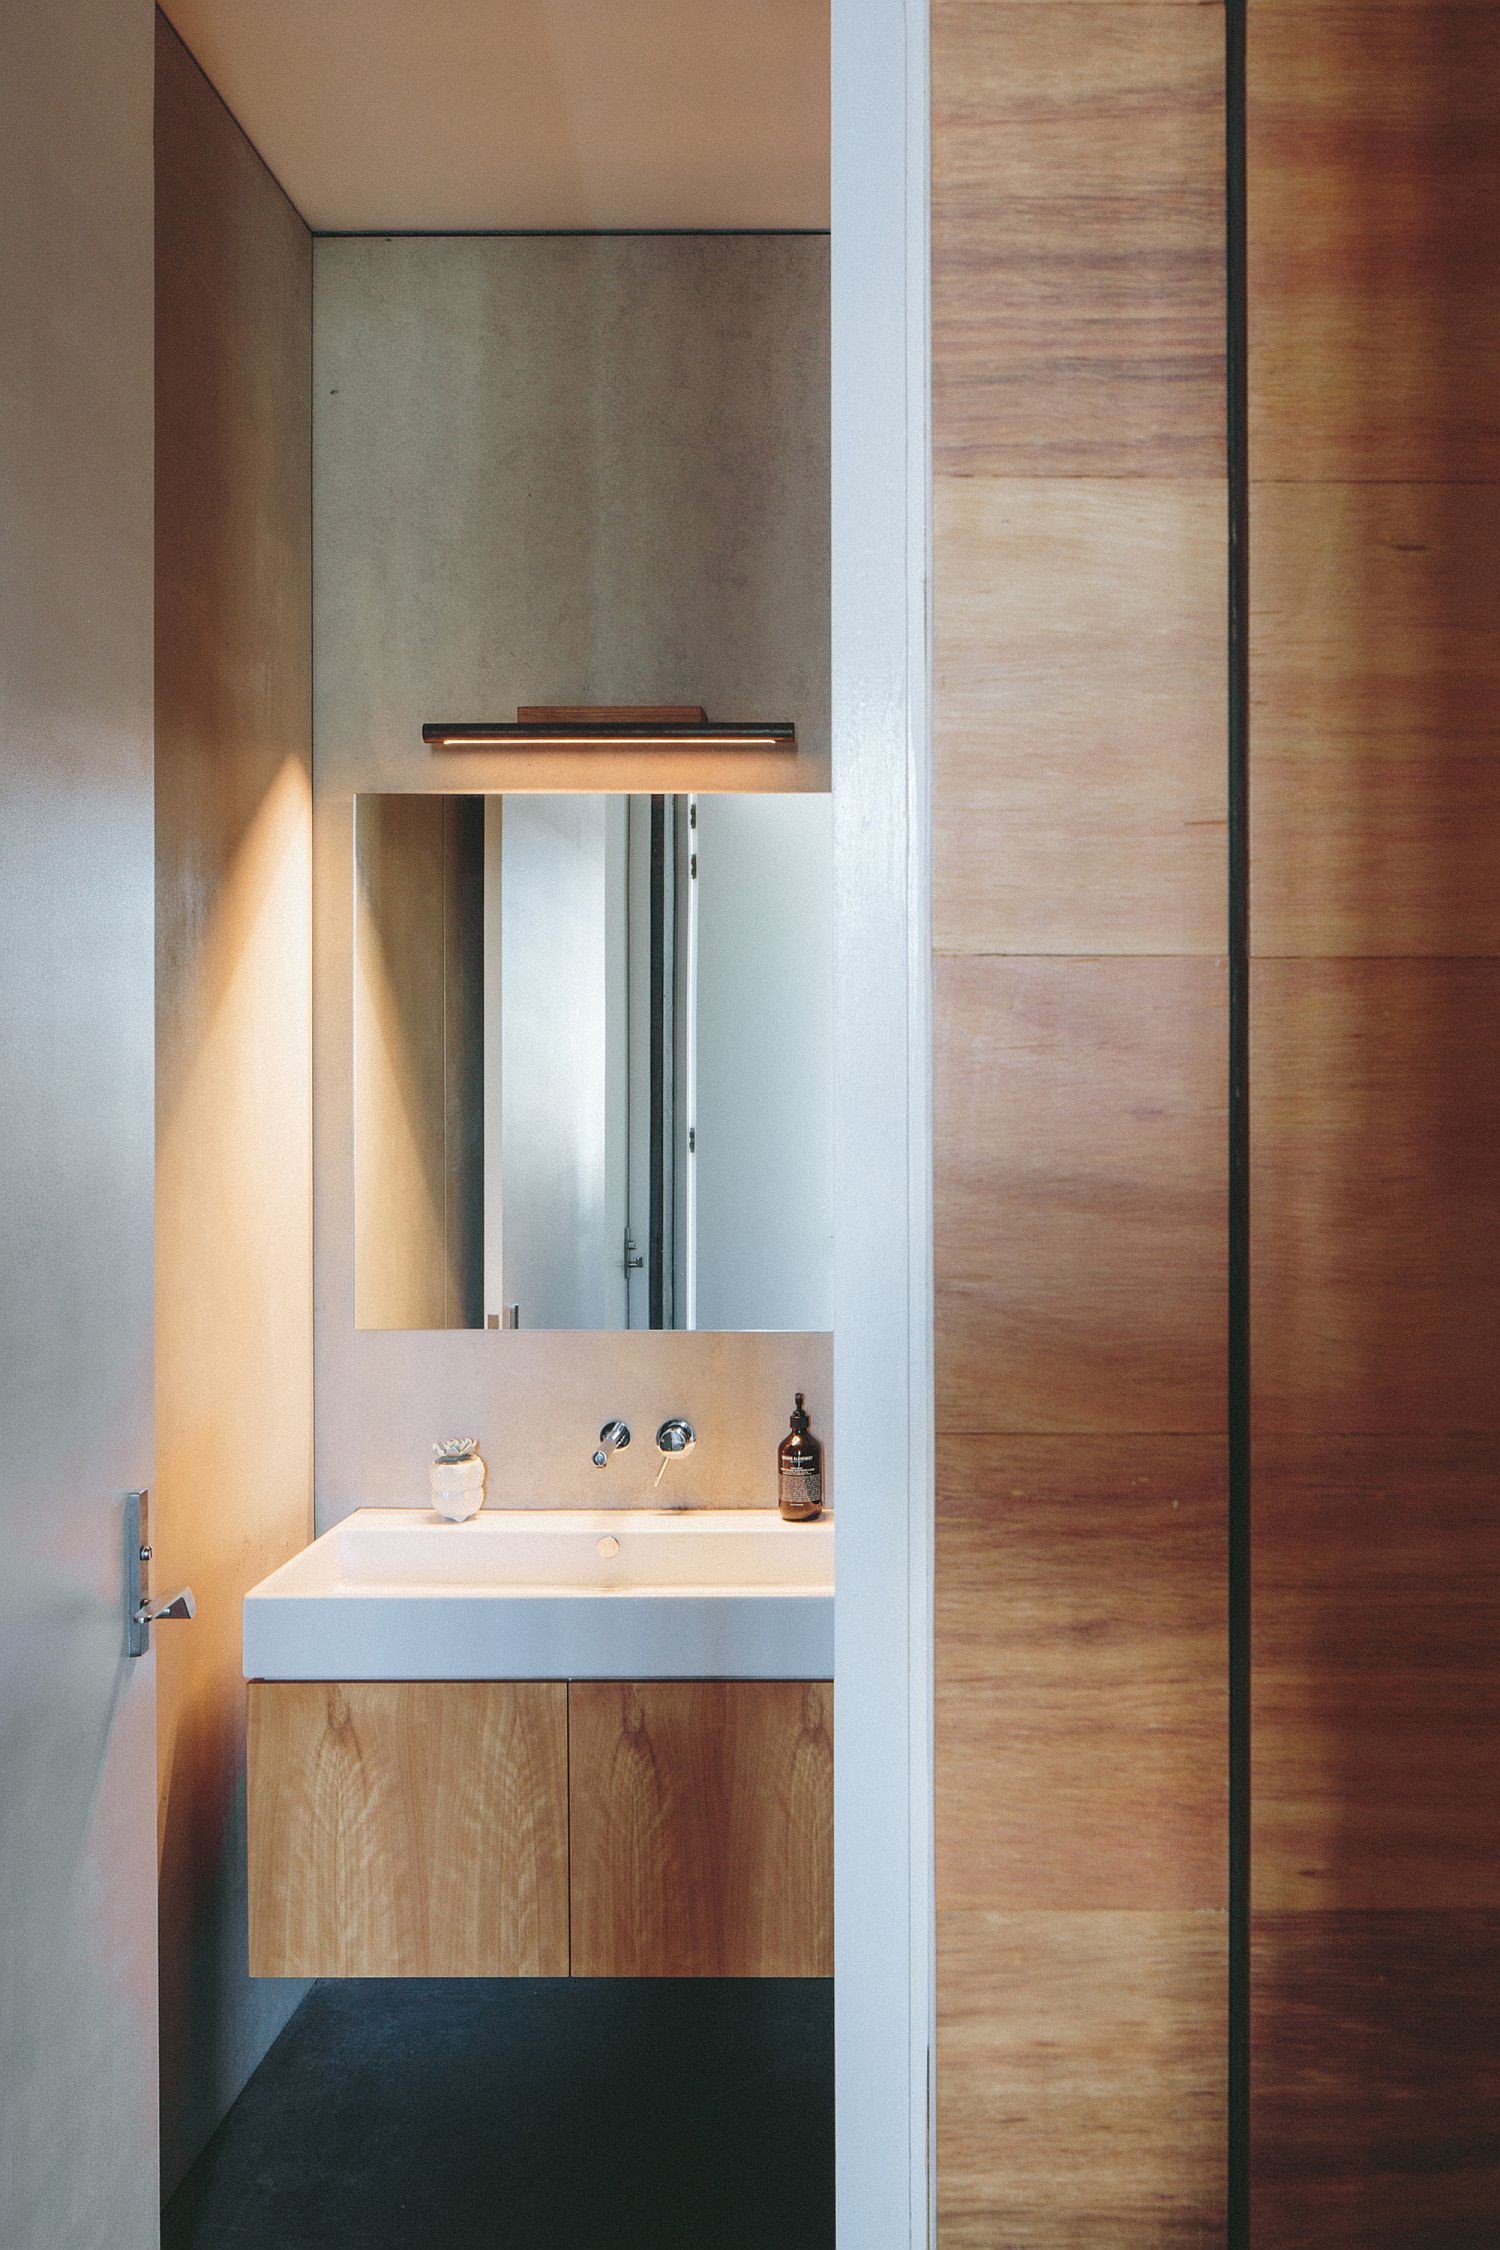 Hình ảnh một góc phòng tắm với bồn rửa sứ trắng, bệ ốp gỗ tự nhiên màu sáng